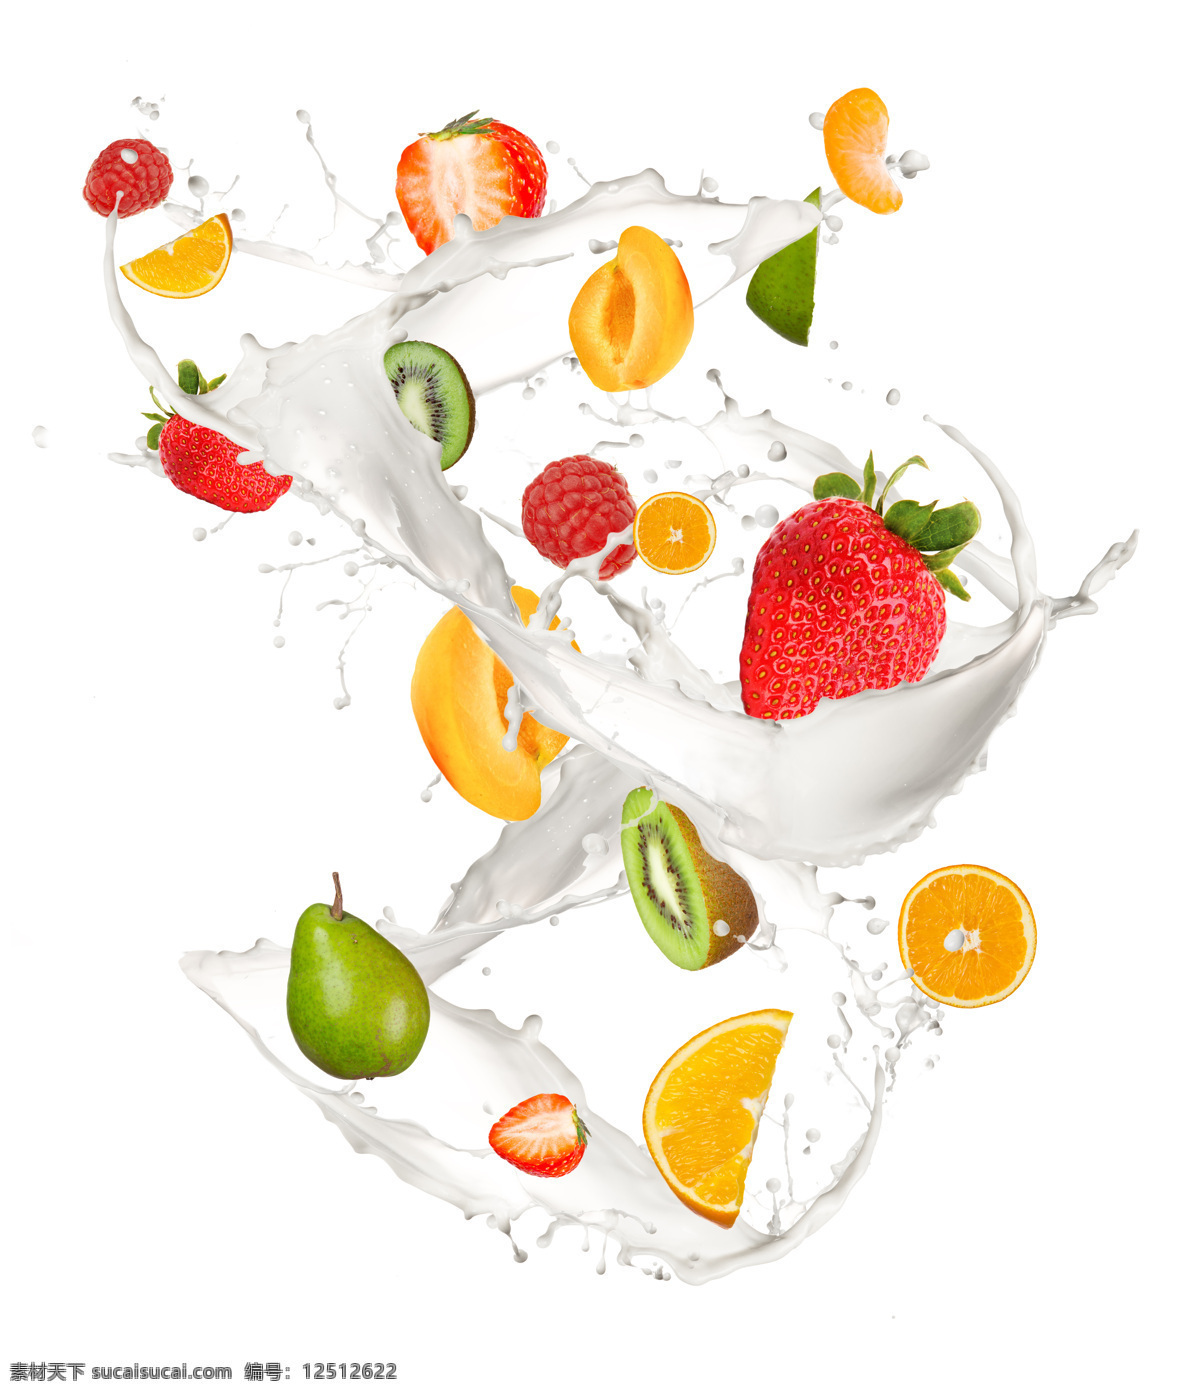 牛奶水果 食物 水果 新鲜 牛奶 溅落 各种水果 橙子 草莓 泥猴桃 梨子 水果蔬菜 餐饮美食 白色